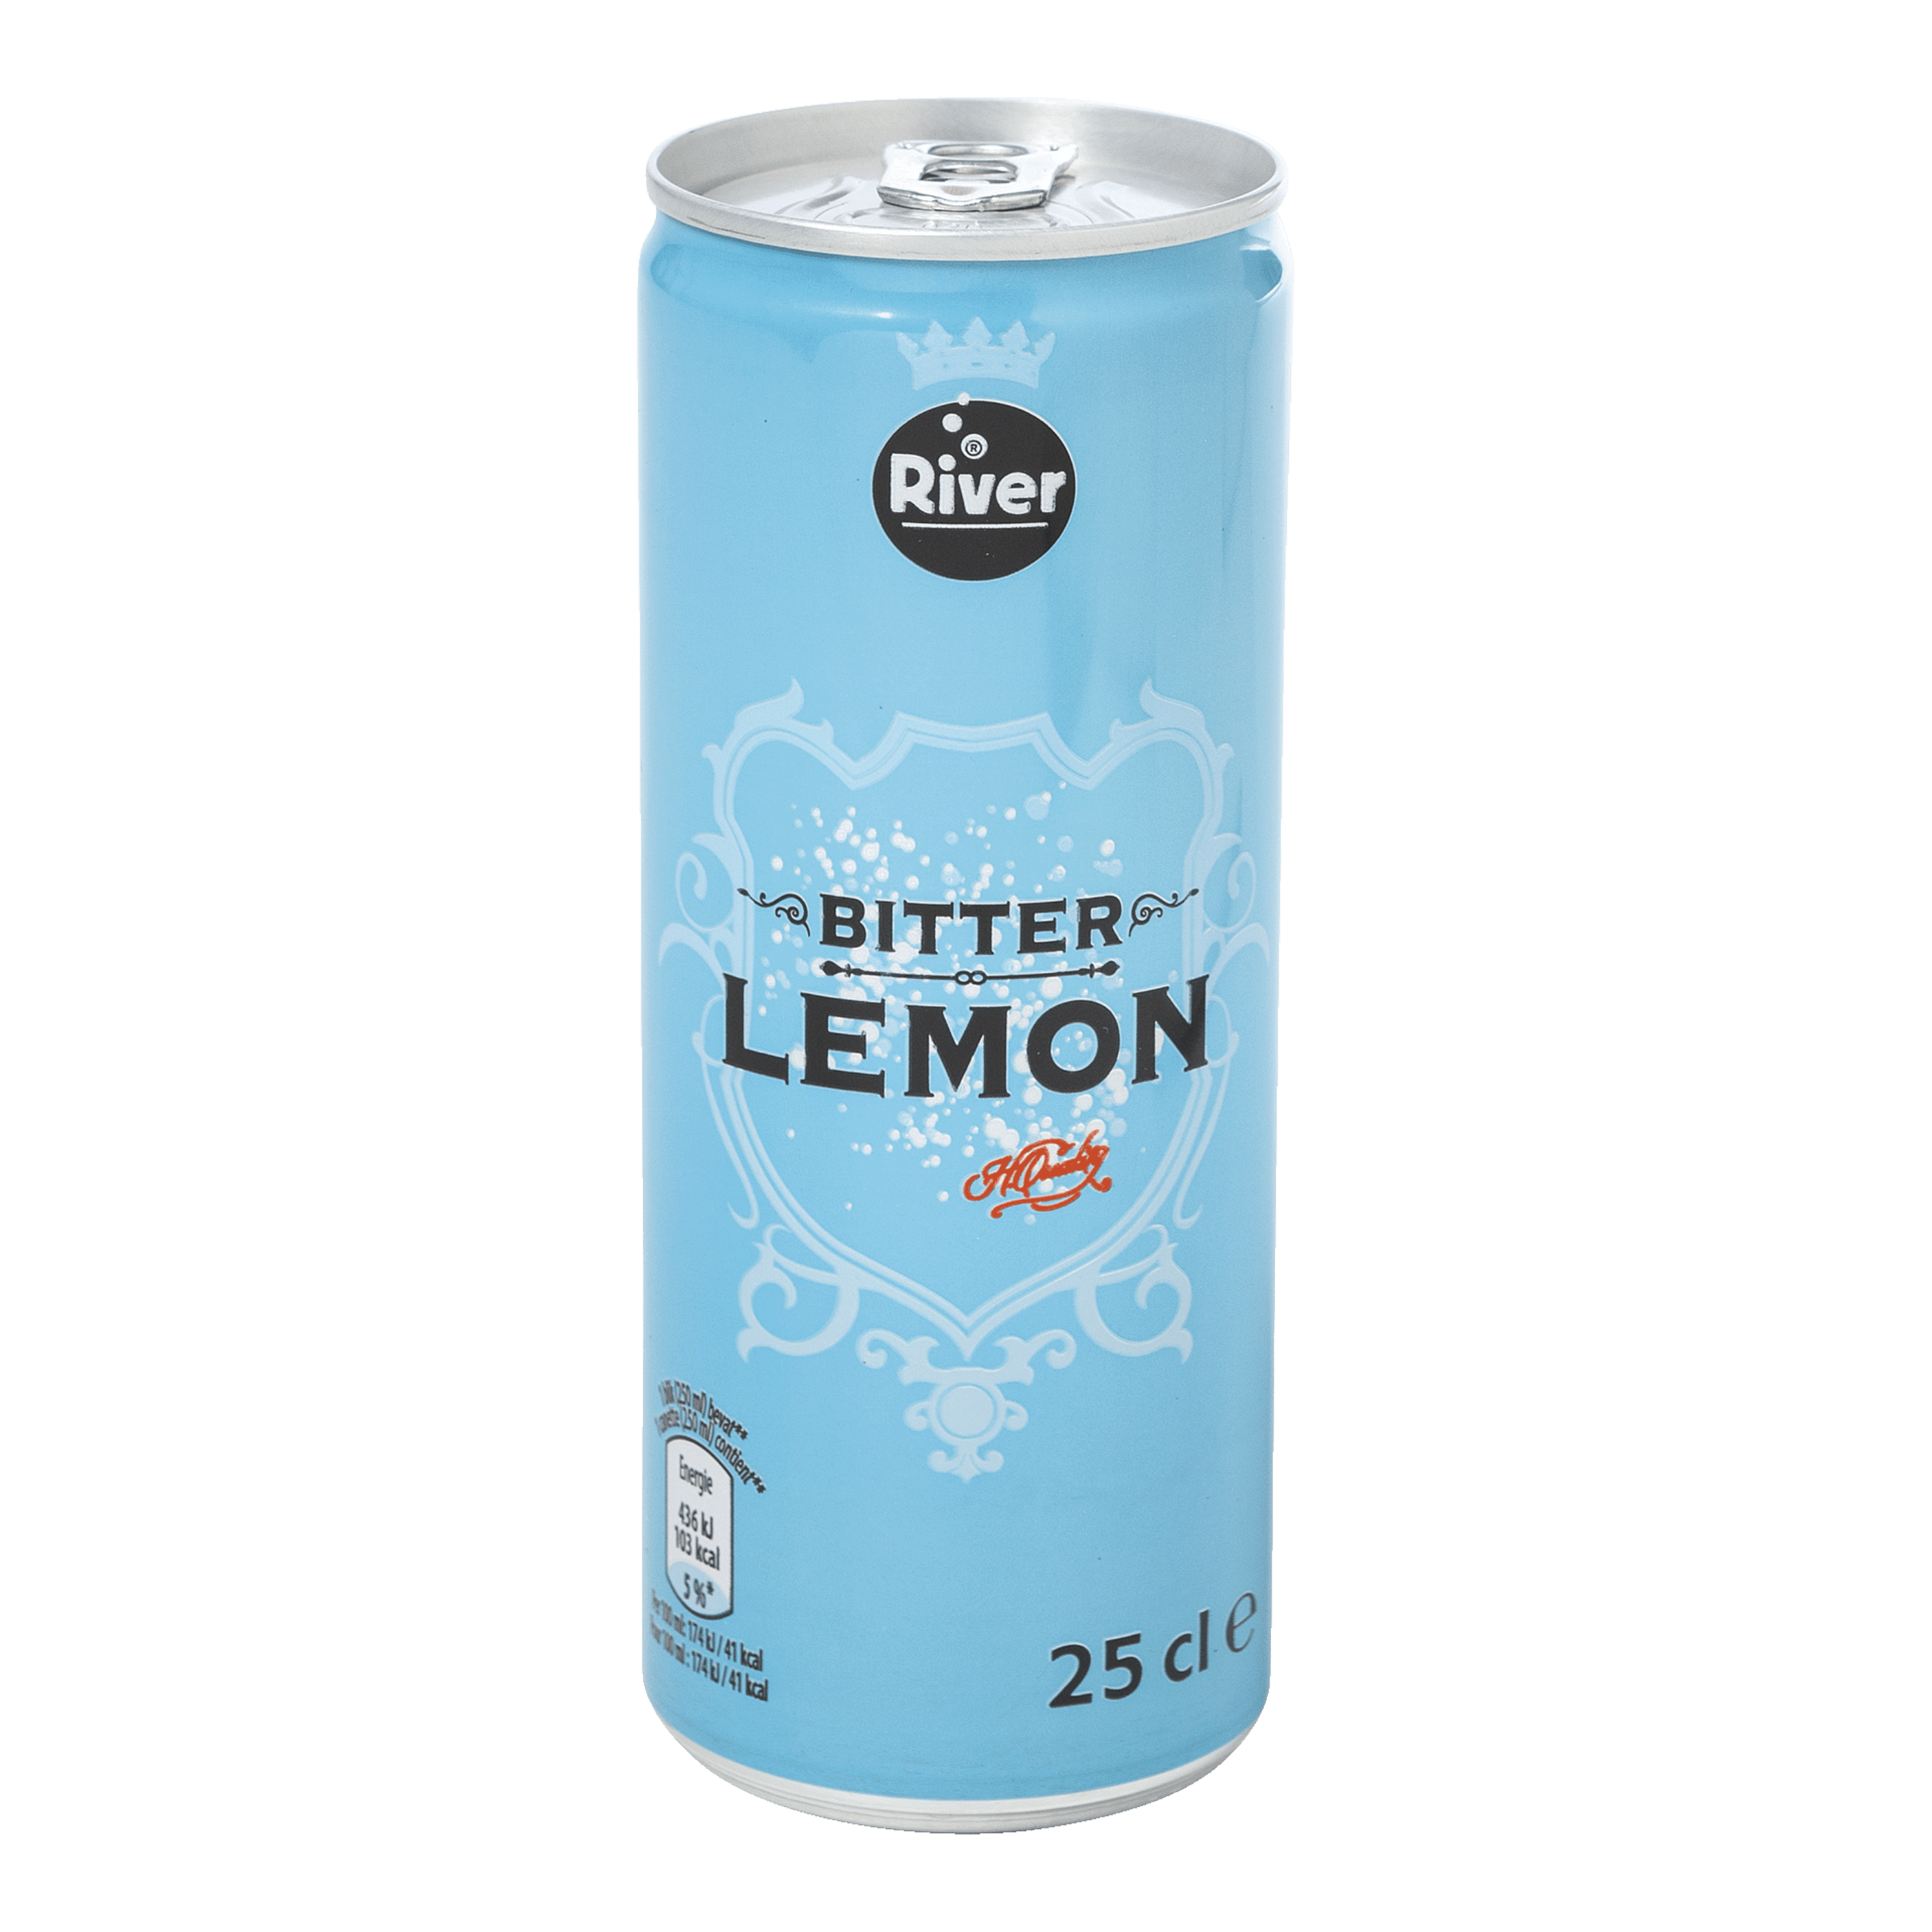 RIVER® Limonade bitter lemon, 8 st. kopen aan lage prijs bij ALDI